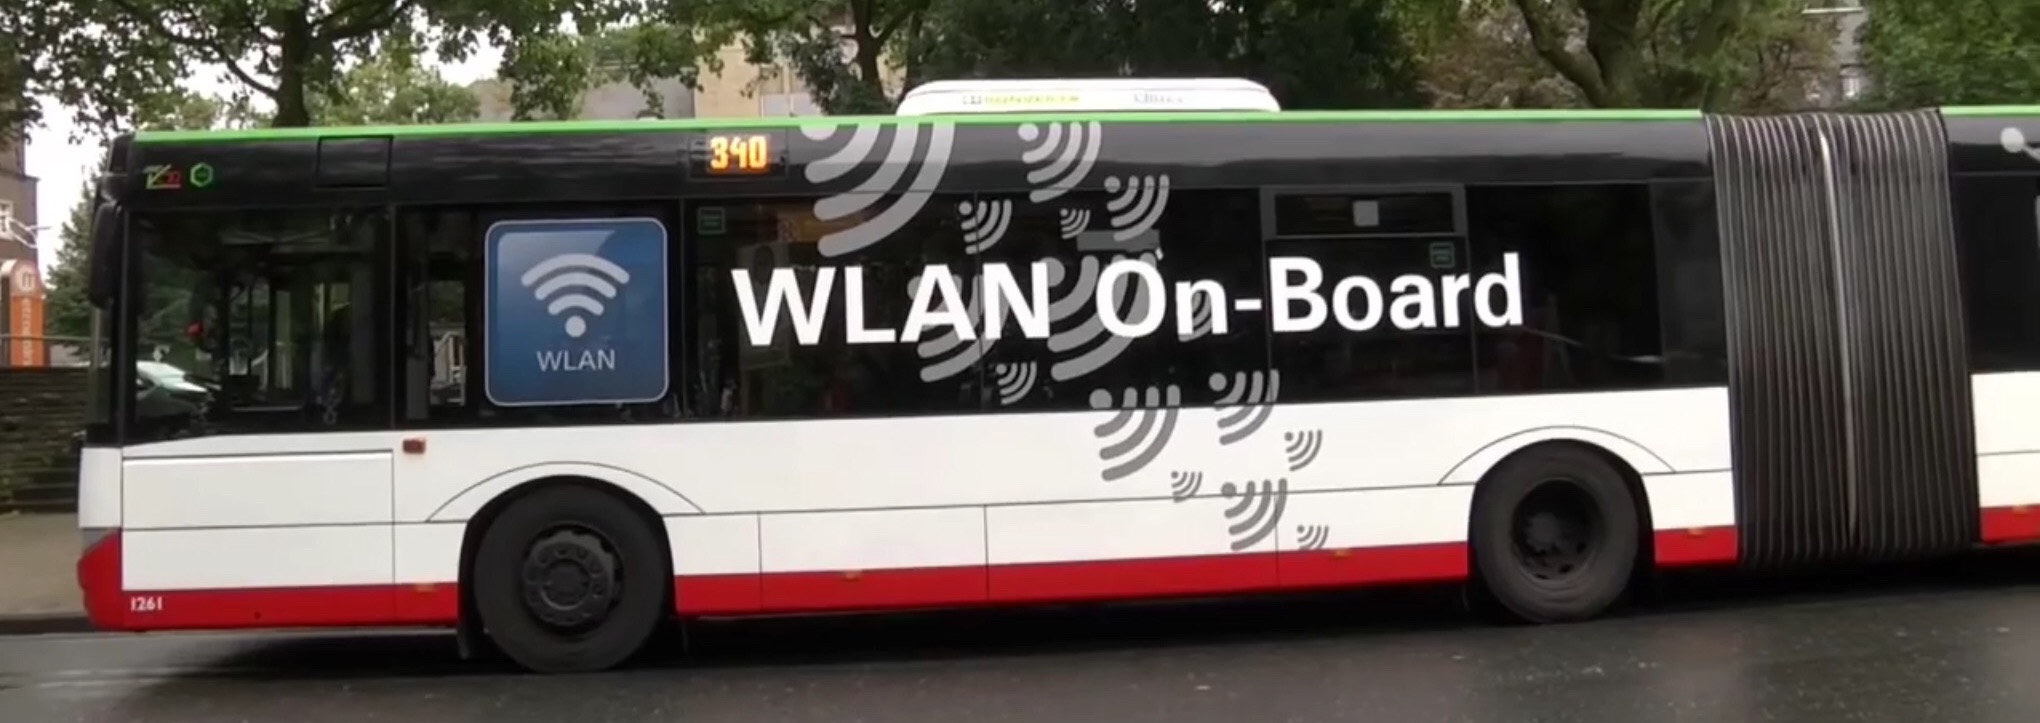 WLAN On-Board - bei der BOGESTRA (Bildquelle: Bogestra-Video WLAN im Bus bei YouTube)